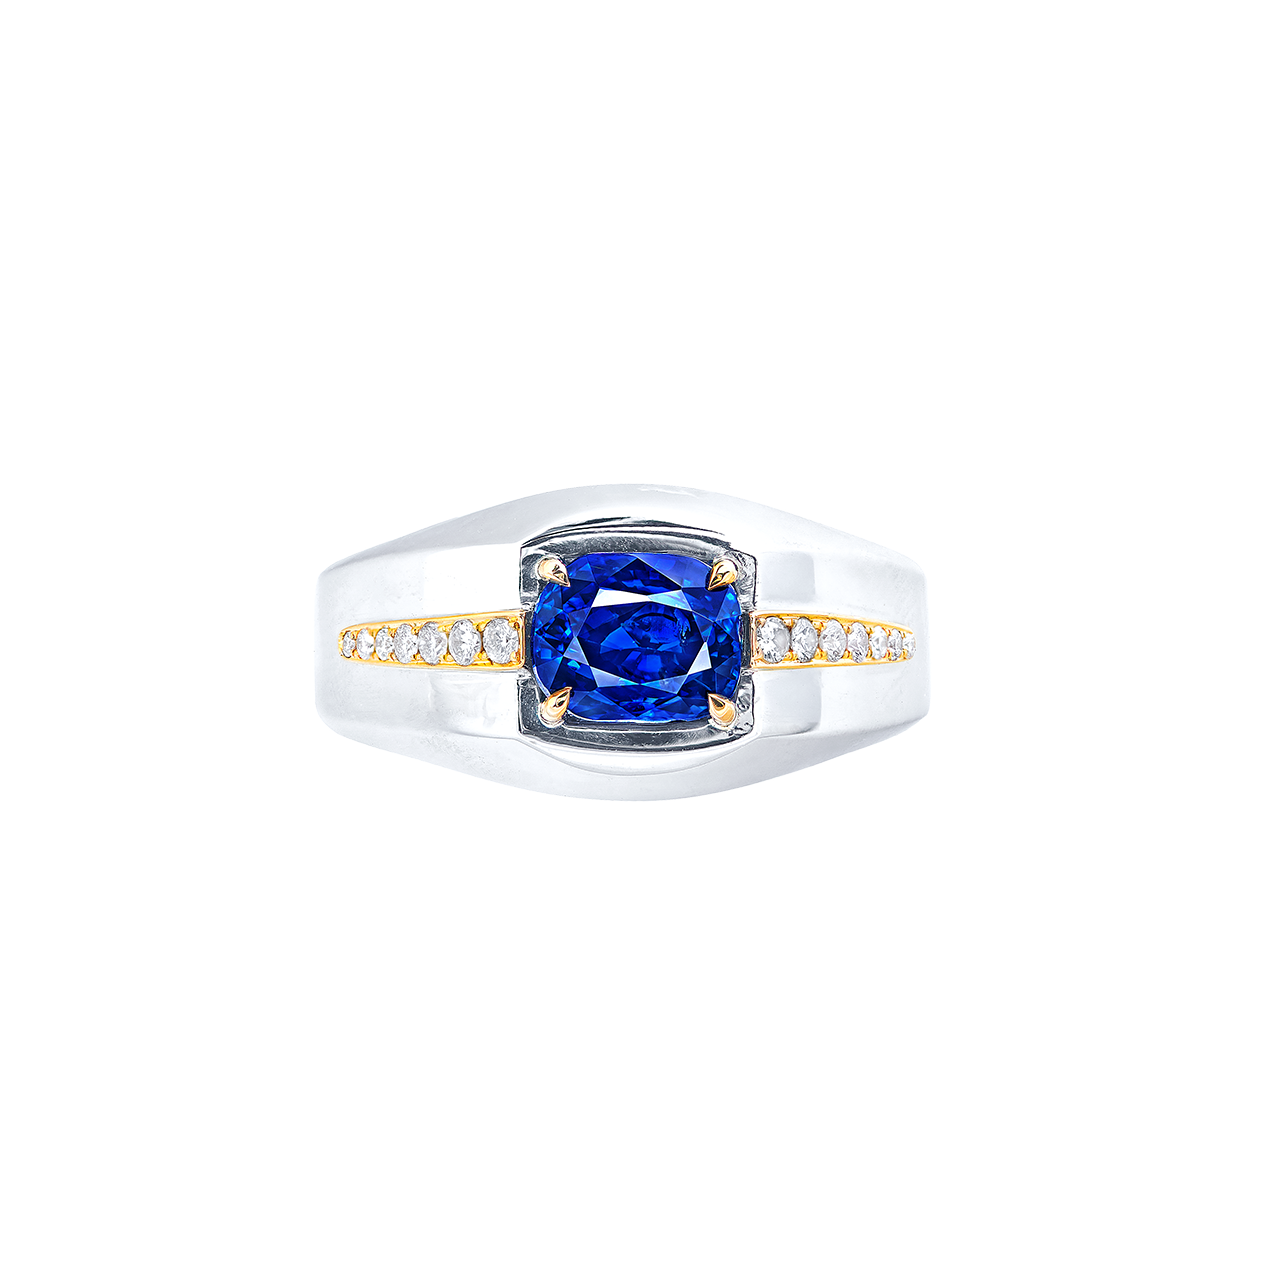 3.56克拉 藍寶石男戒
Blue Sapphire Ring for Man